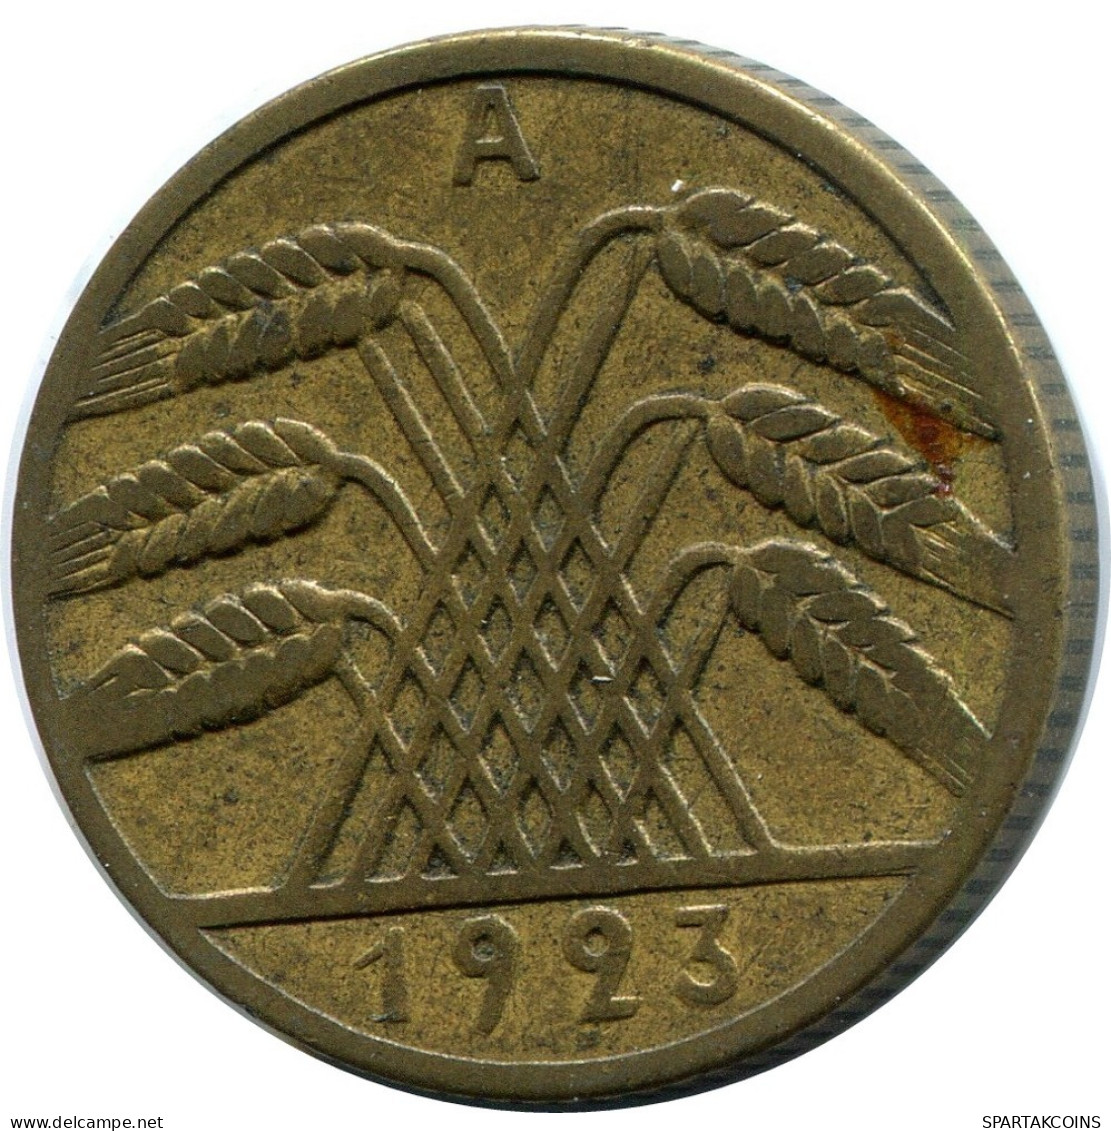 10 RENTENPFENNIG 1923 A GERMANY Coin #DB930.U.A - 10 Renten- & 10 Reichspfennig